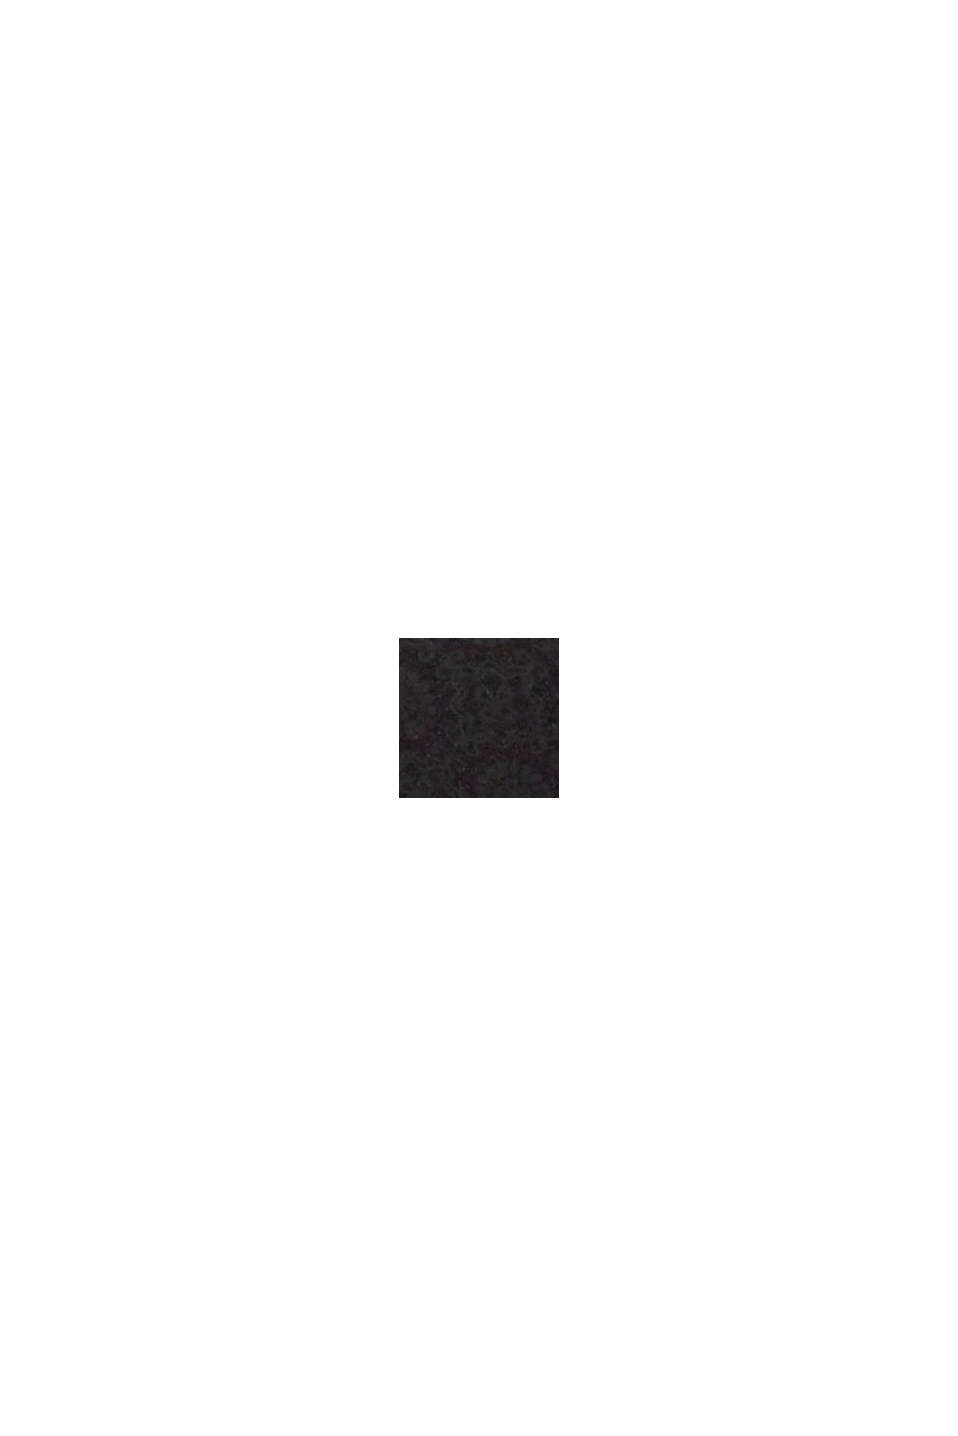 Soutien-gorge souple en microfibre à imprimé et dentelle, BLACK, swatch